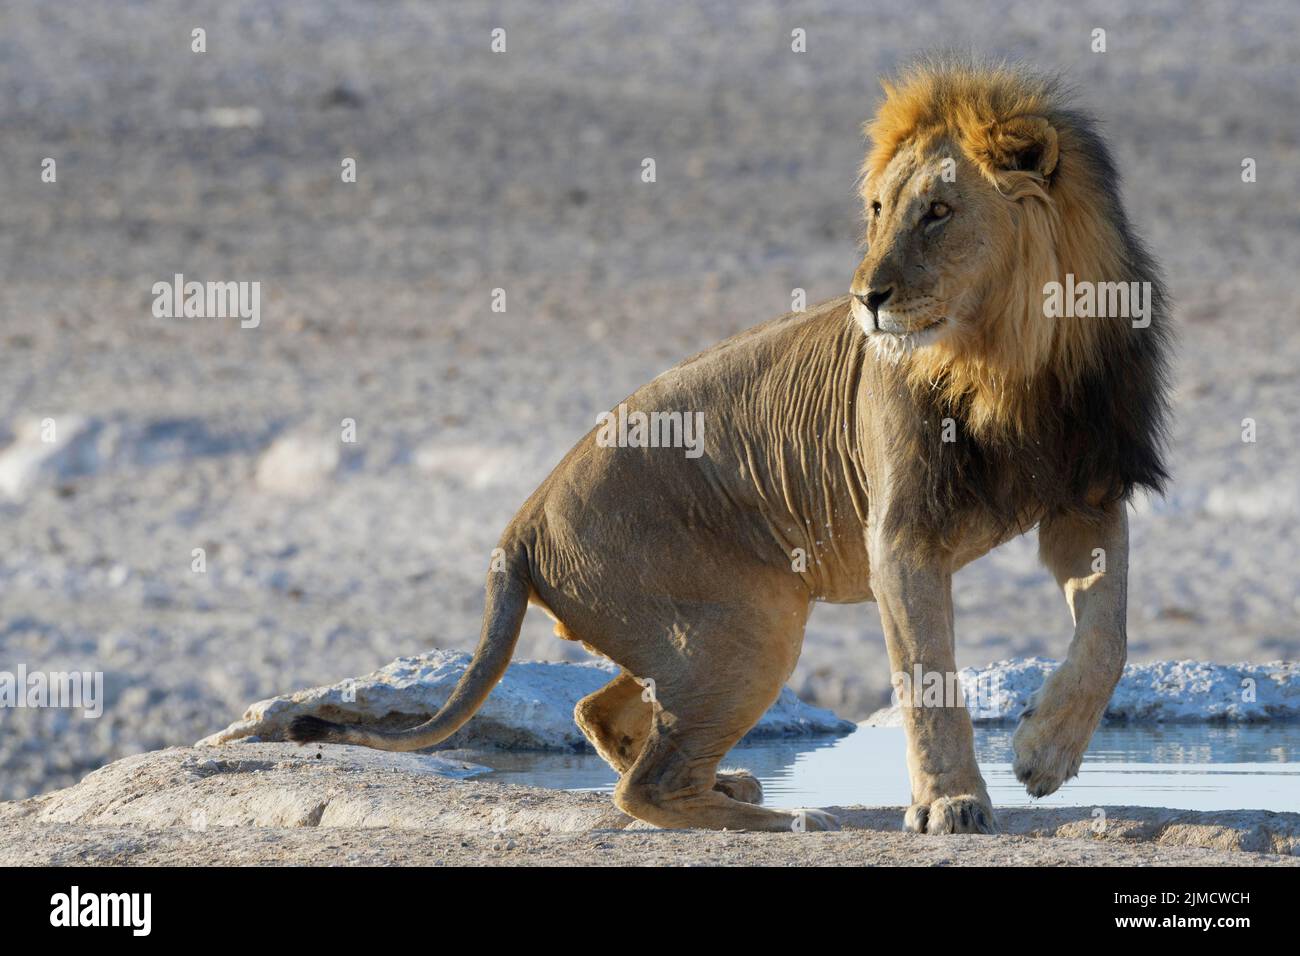 Afrikanischer Löwe (Panthera leo), liegender erwachsener männlicher Löwe, der aufsteigt, am Wasserloch, Alarm, Etosha National Park, Namibia, Afrika Stockfoto